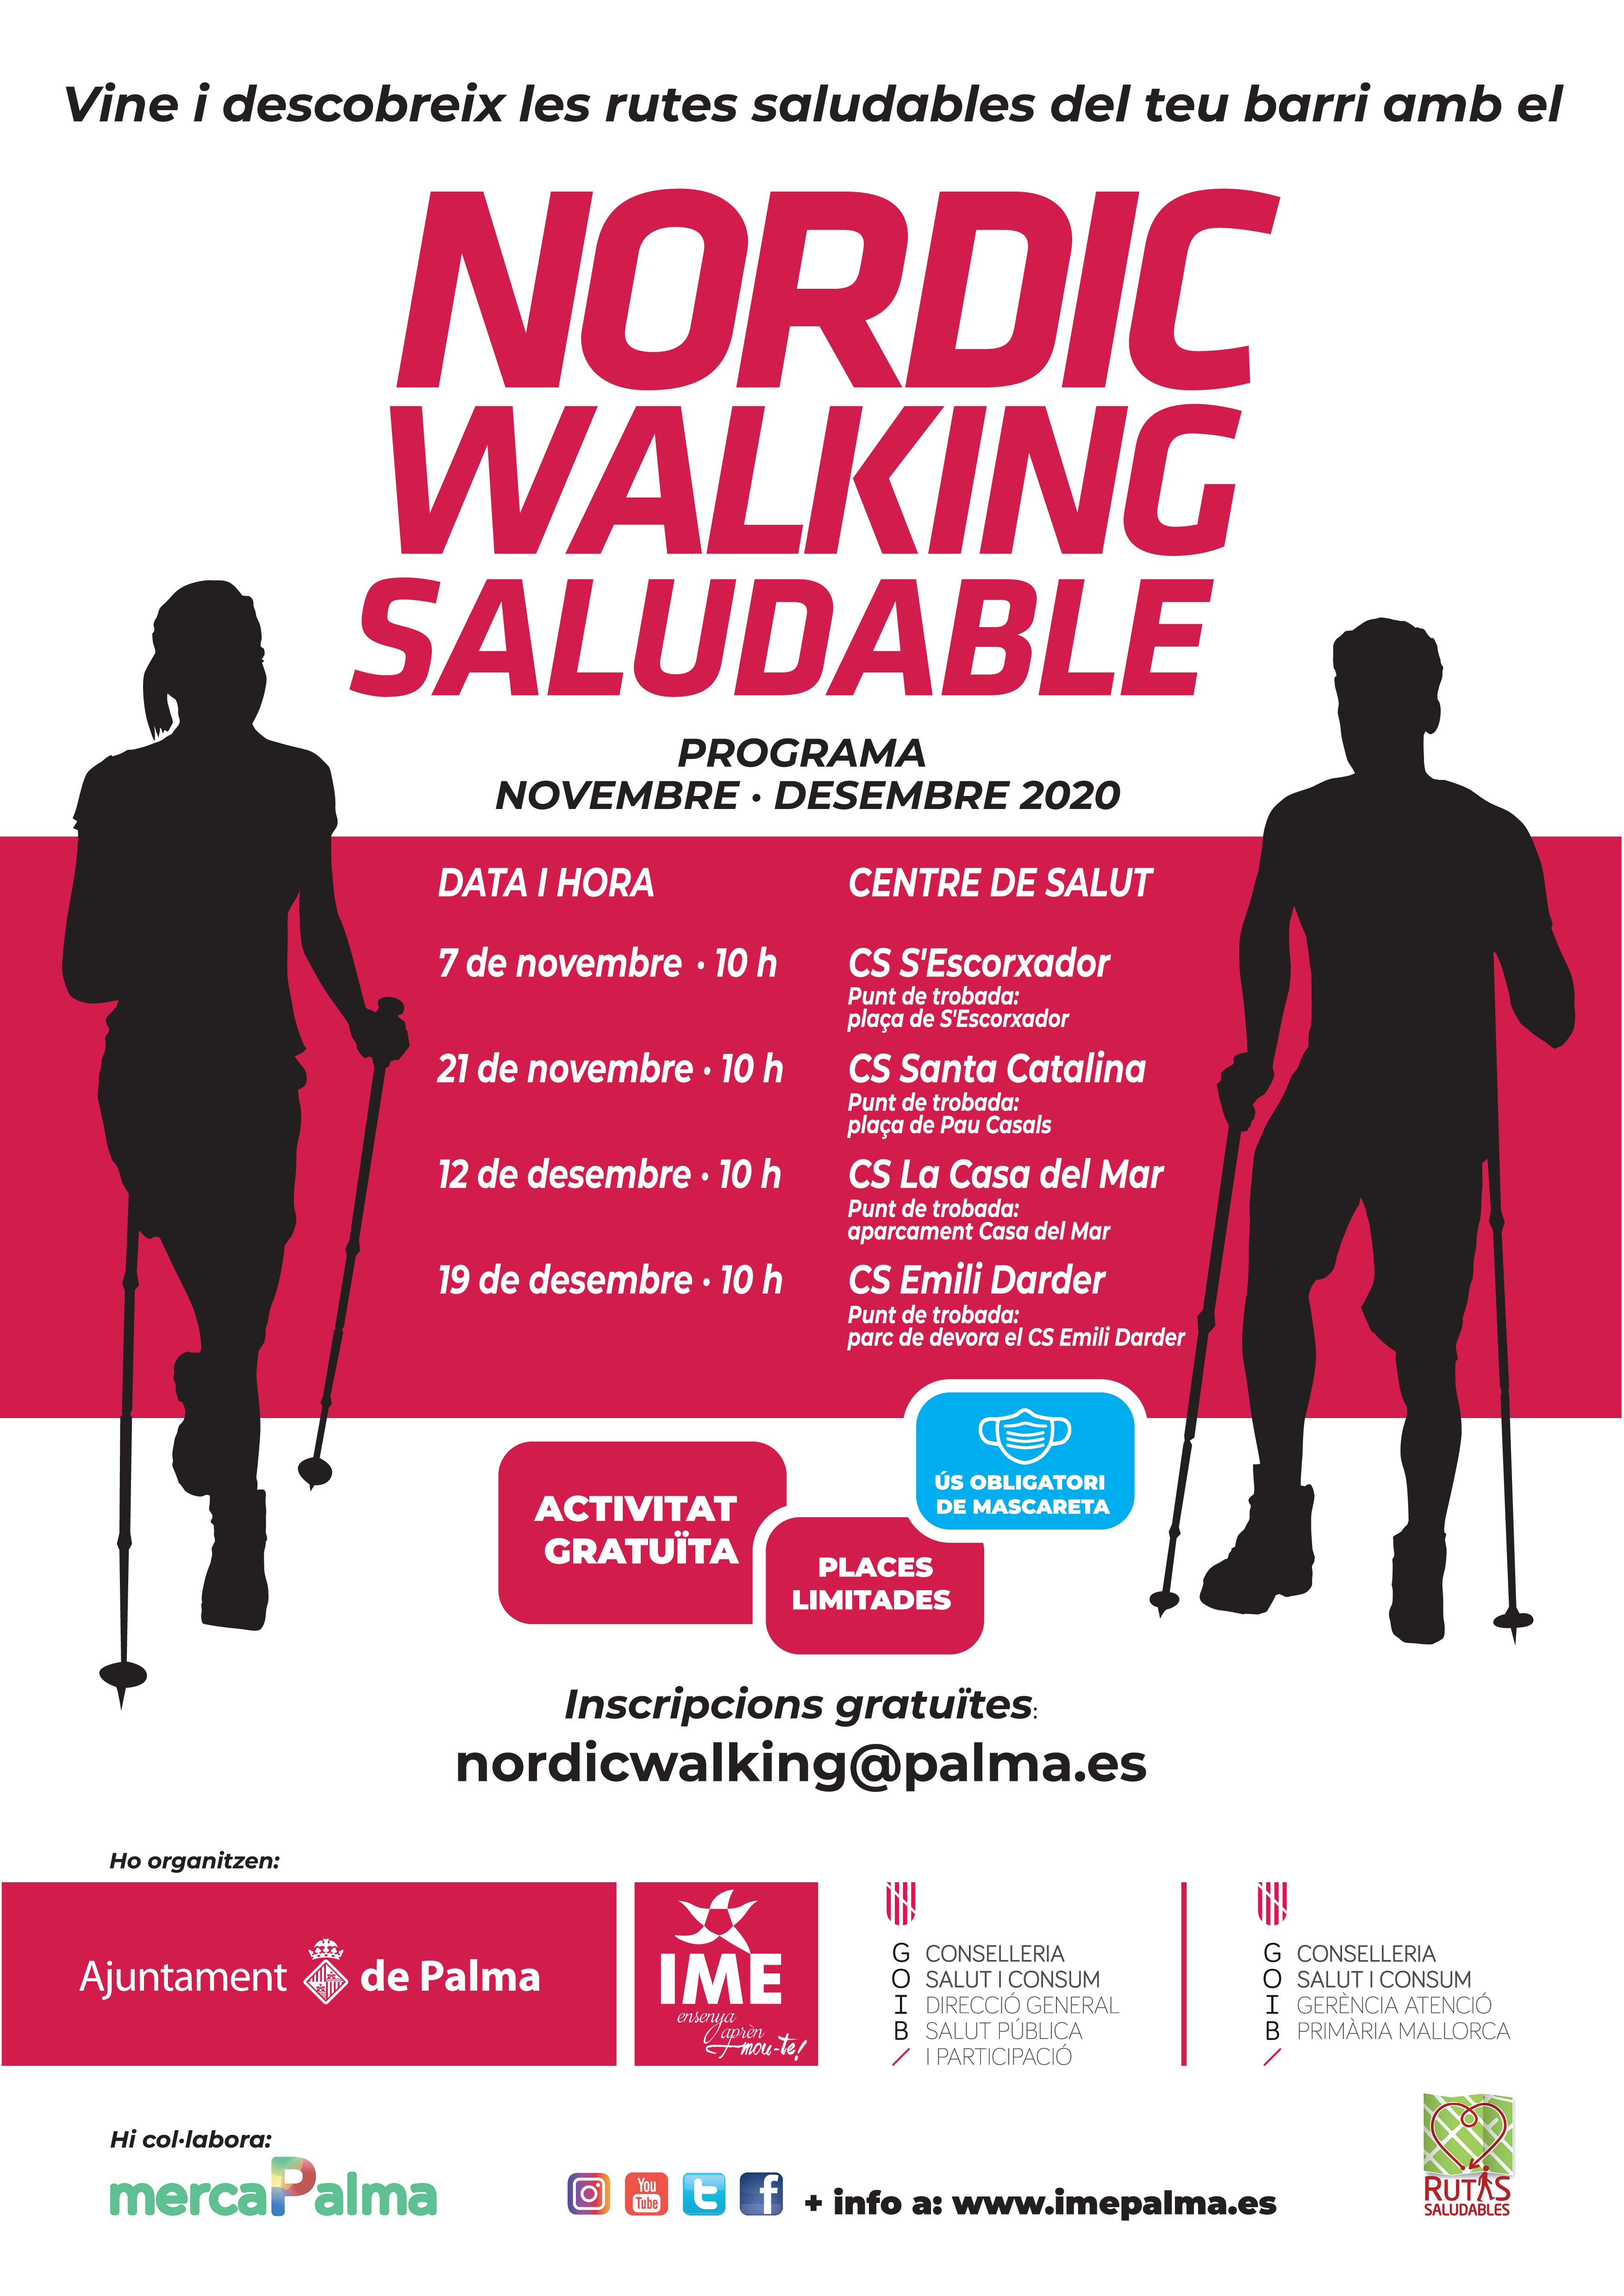 Nordic Walking Saludable nov des 2020